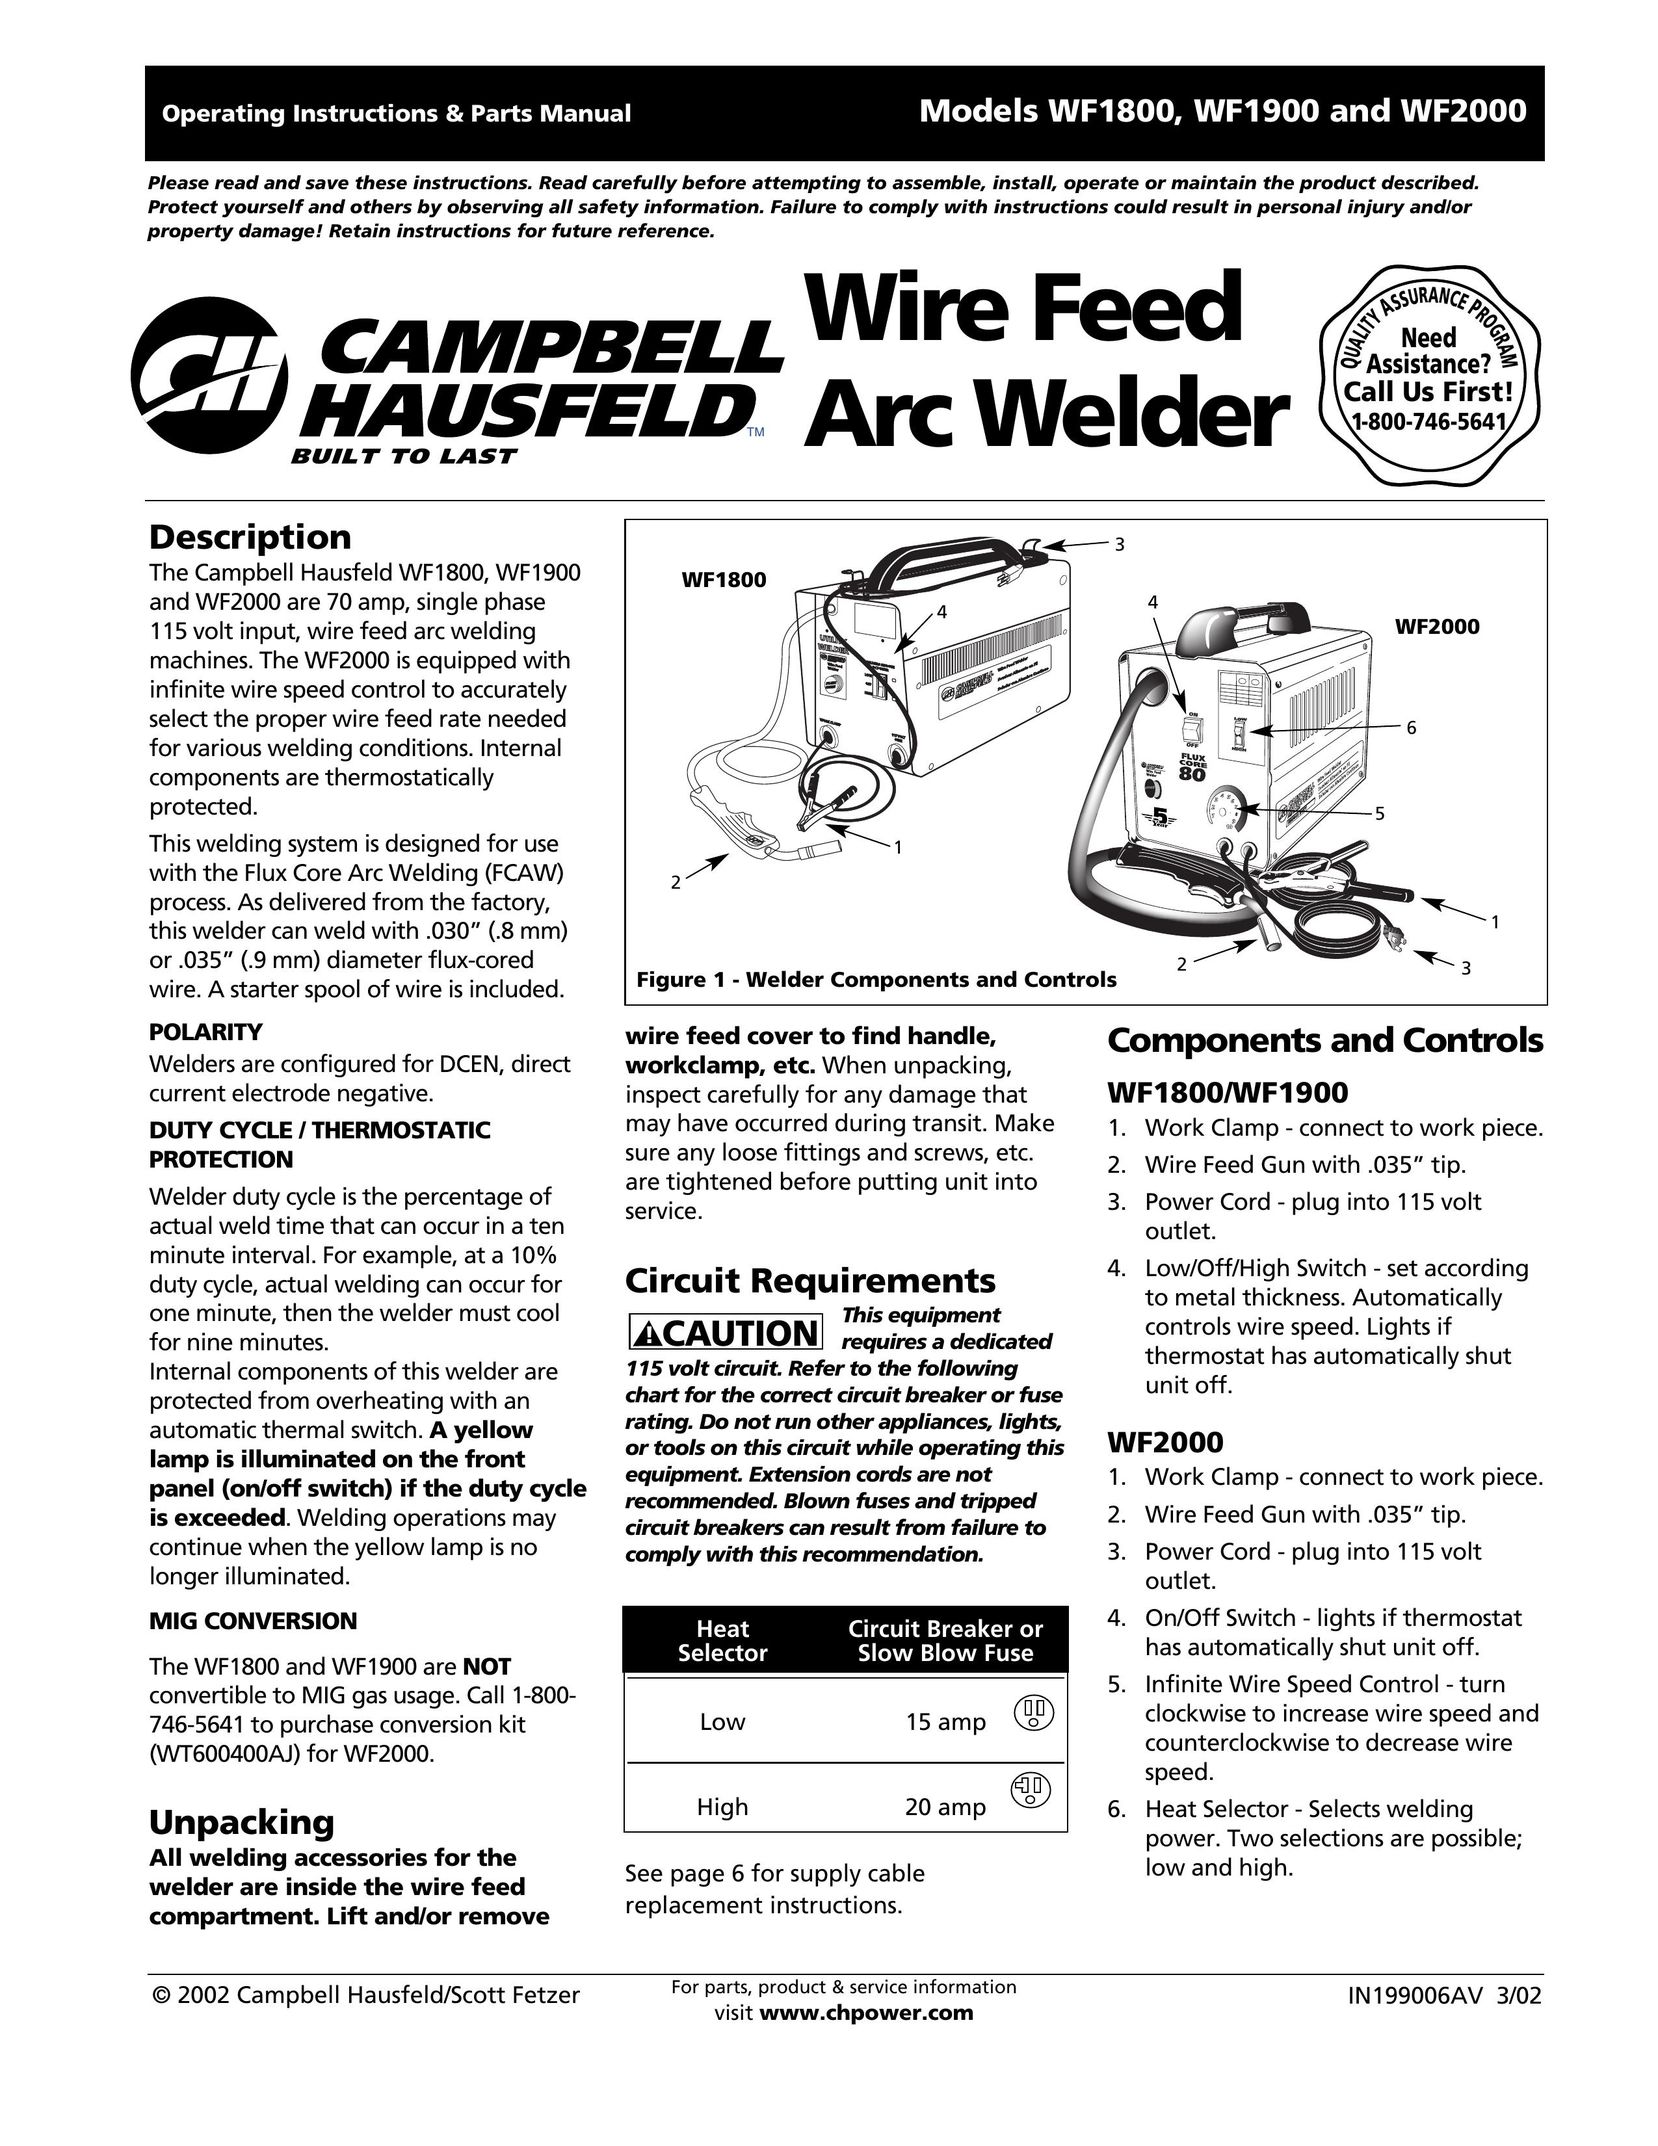 Campbell Hausfeld WF1800 Welder User Manual